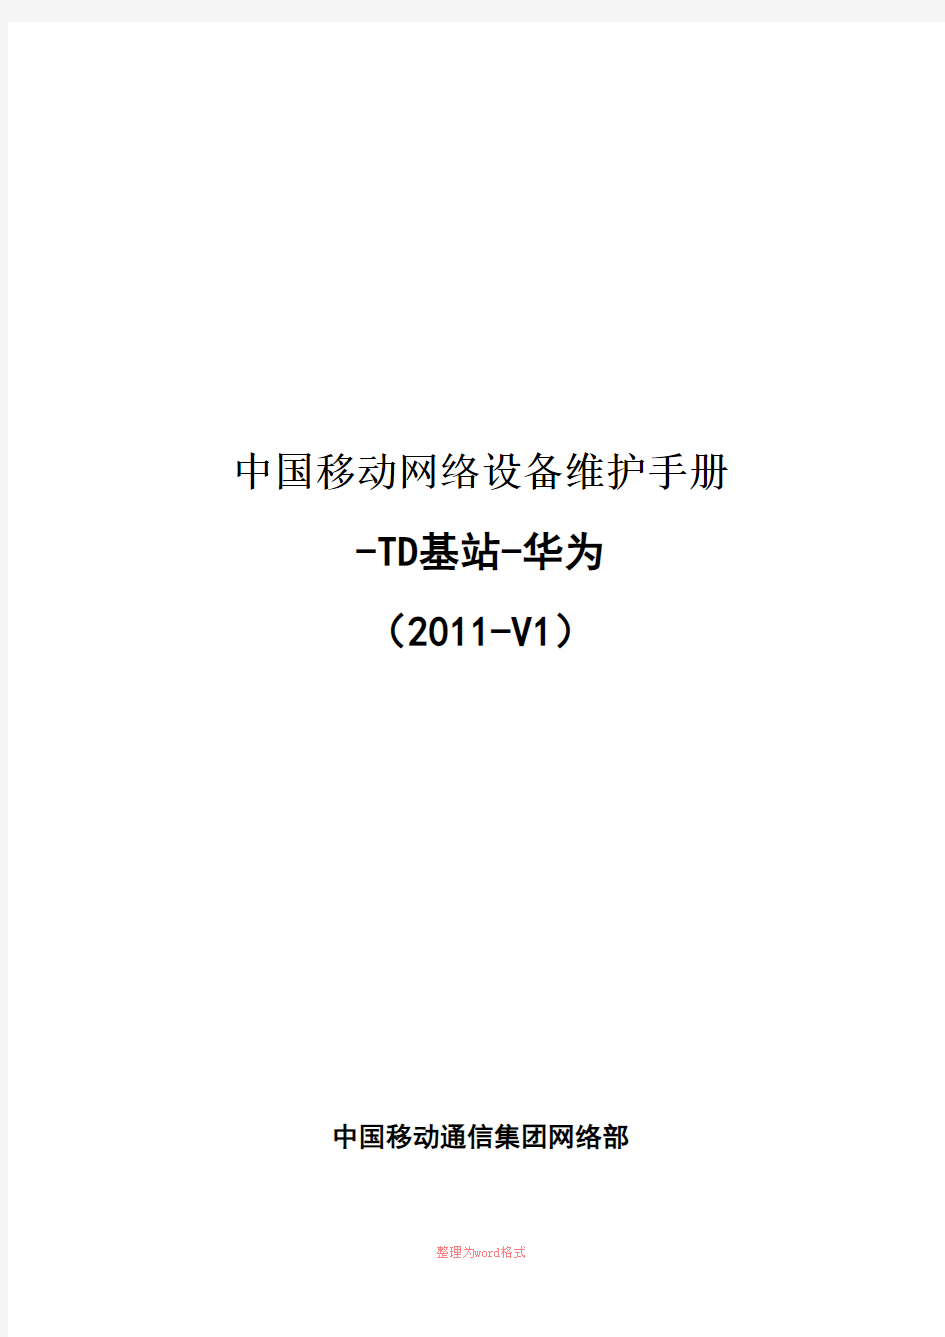 6、中国移动网络设备维护手册-TD基站-华为(2011-V1)